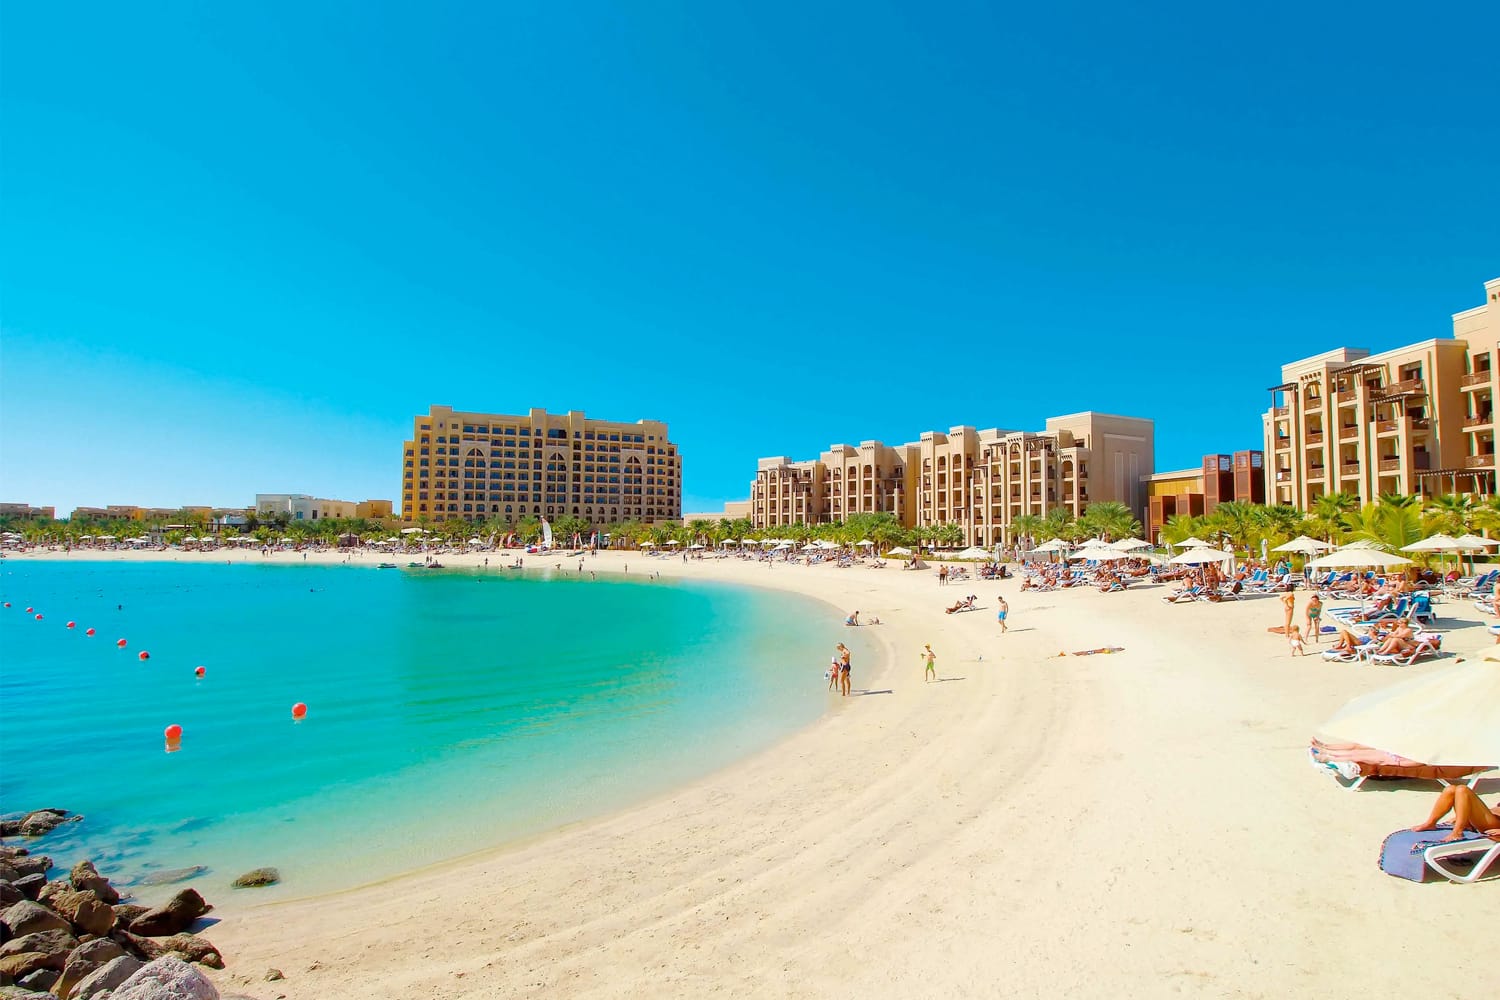 Ιδιωτική παραλία Double Tree by Hilton Resort and Spa στο Ras Al Khaimah, ΗΑΕ